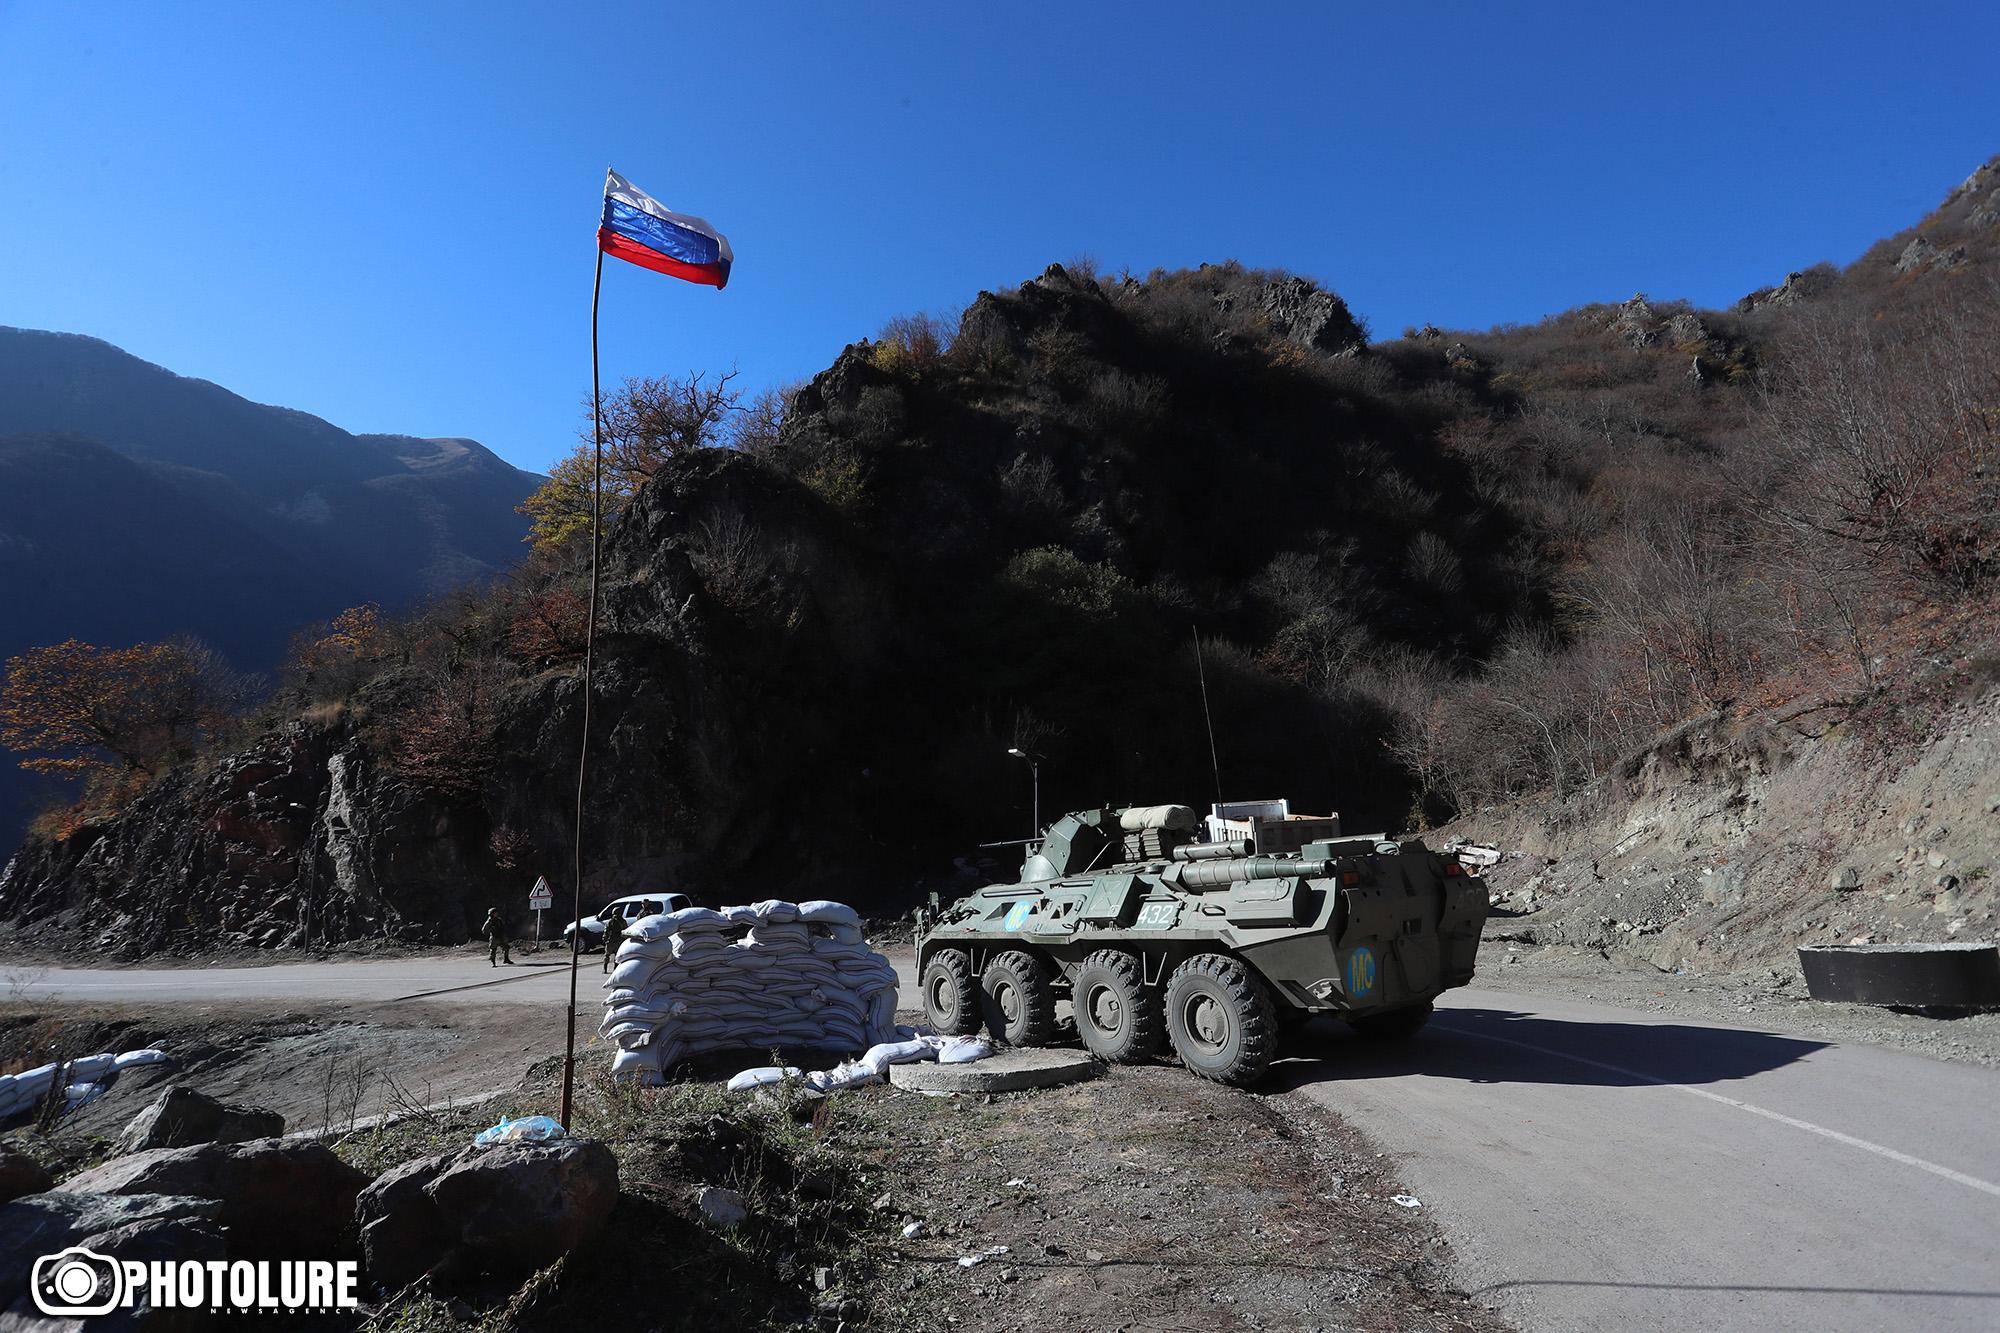 Kremlin set up guidelines for media coverage of Karabakh crisis